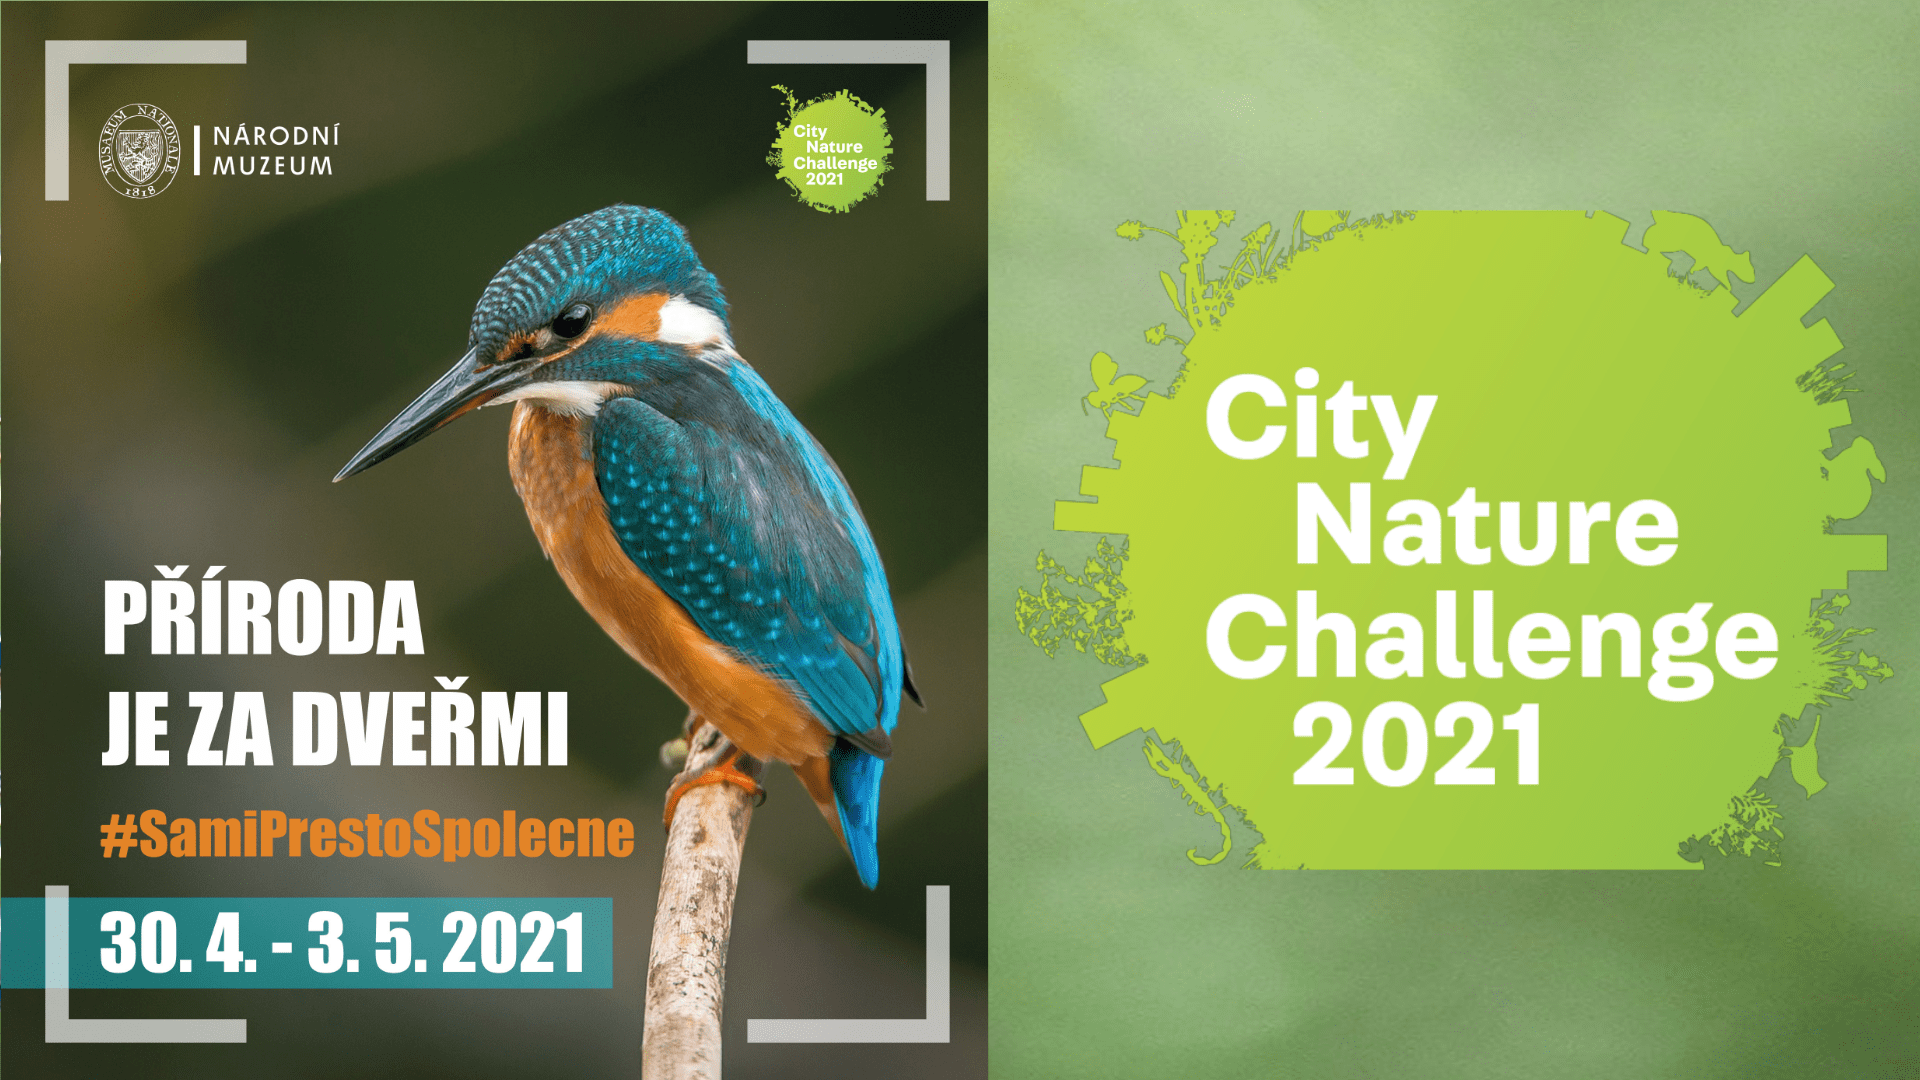 City Nature Challenge Praha 2021